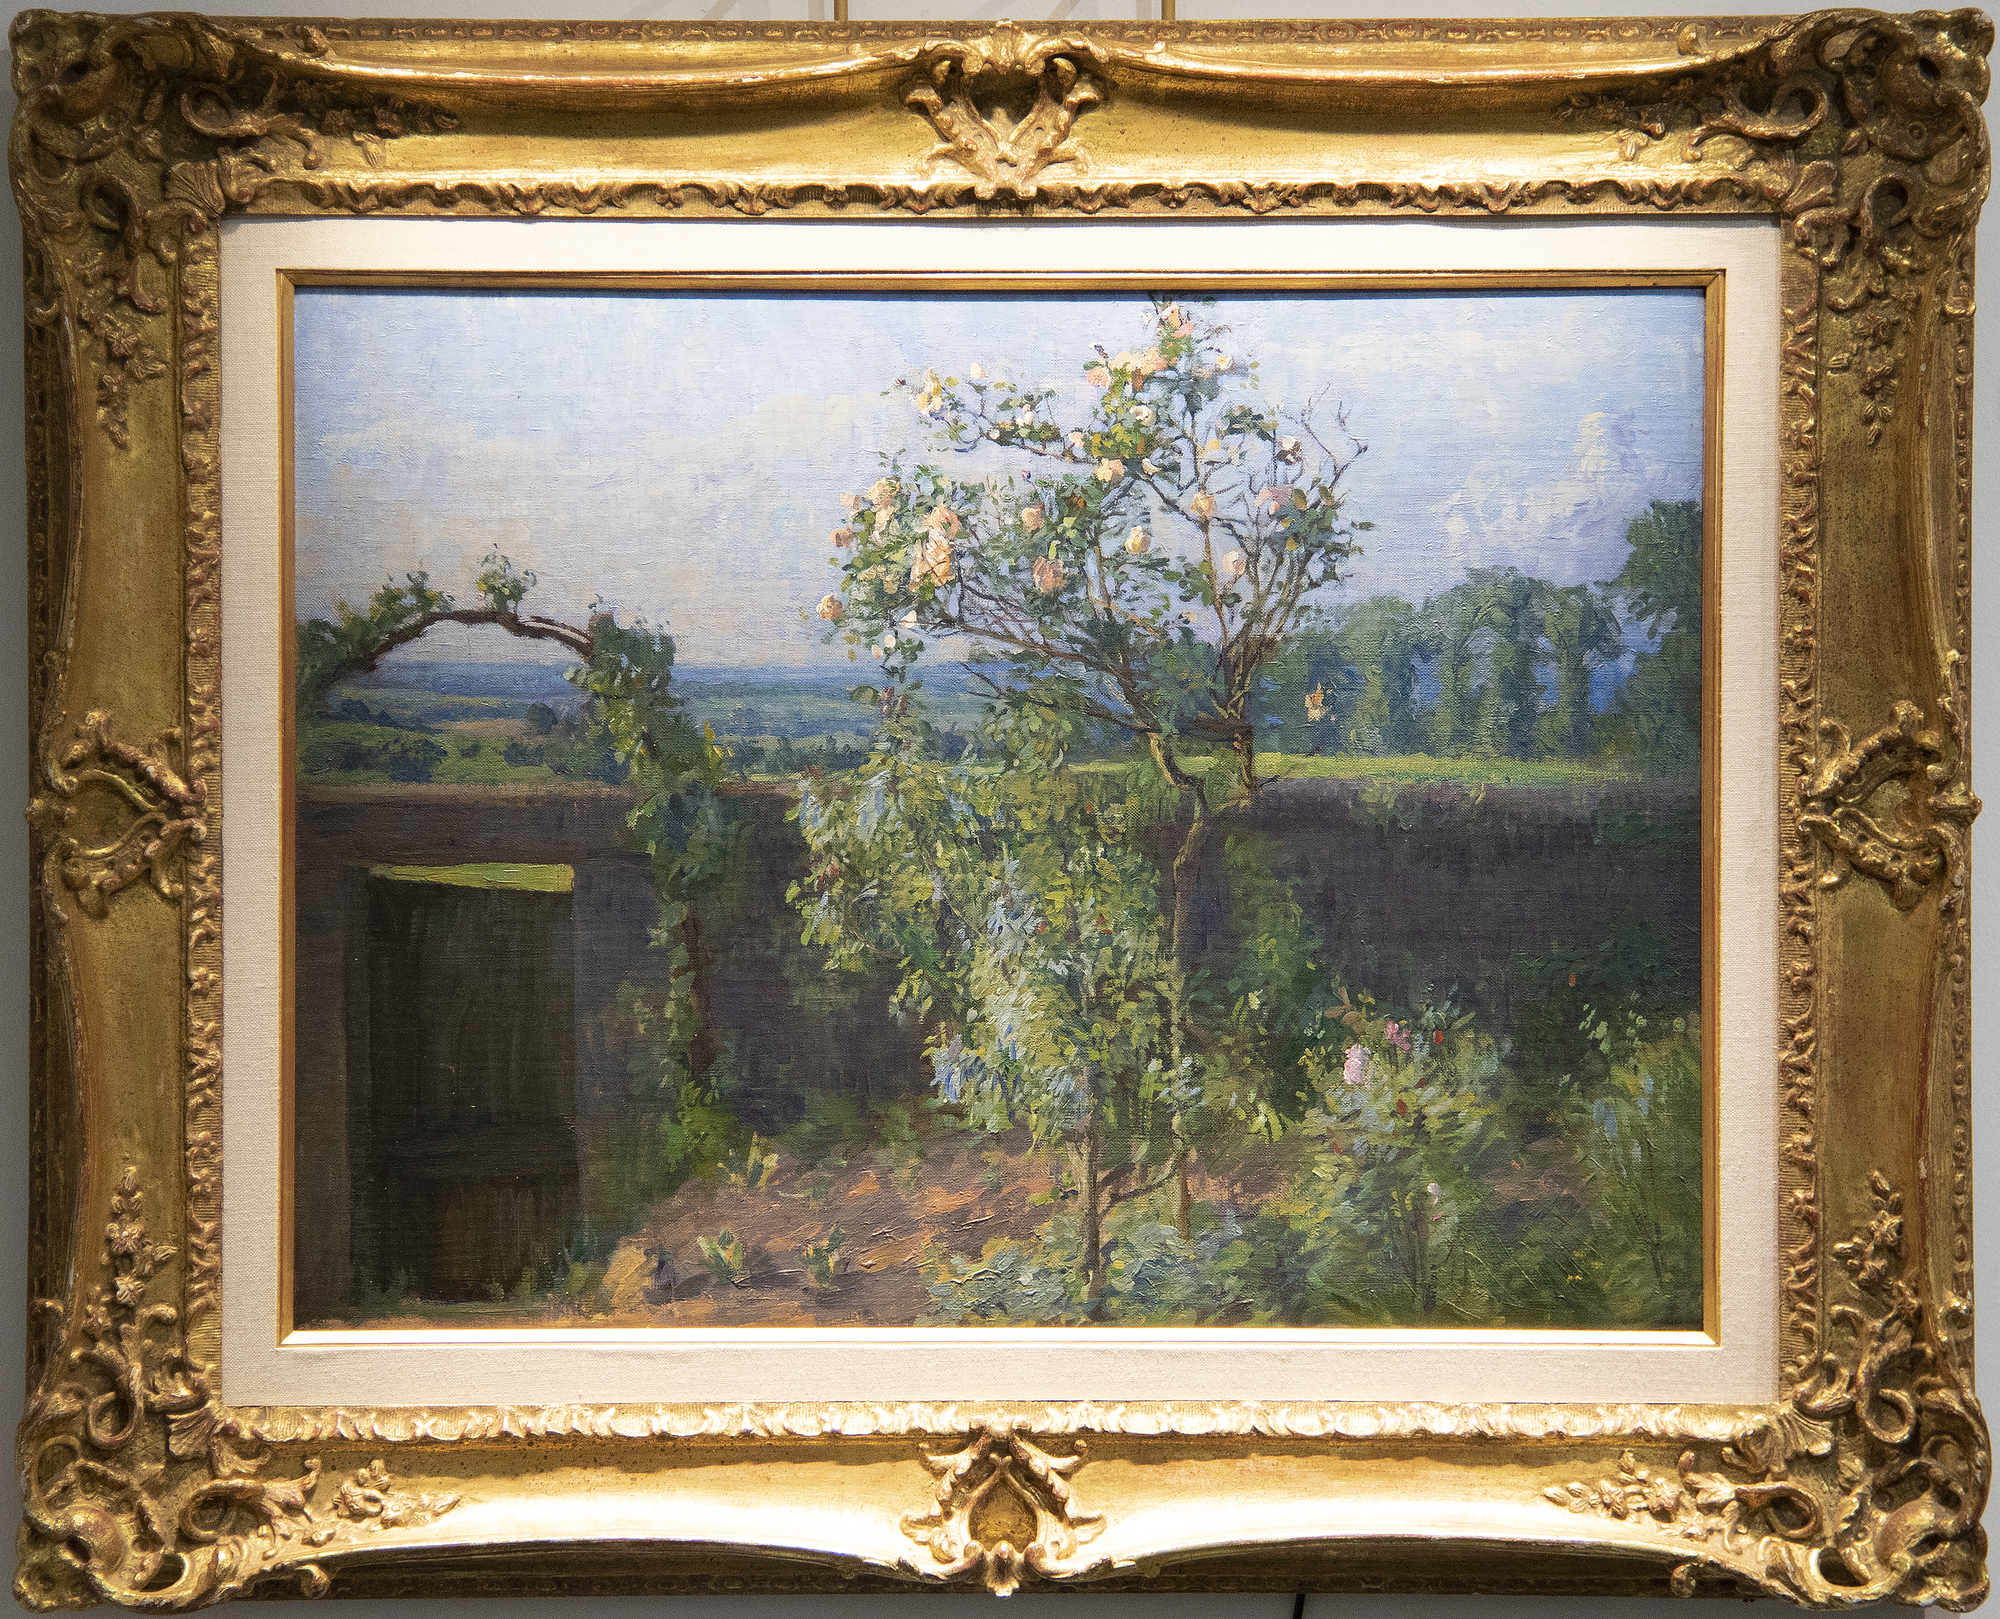 GUSTAVE CAILLEBOTTE - Vue du jardin de l’artiste et de la Vallée de I'Yerres - oil on canvas - 19 1/8 x 25 1/2 in.